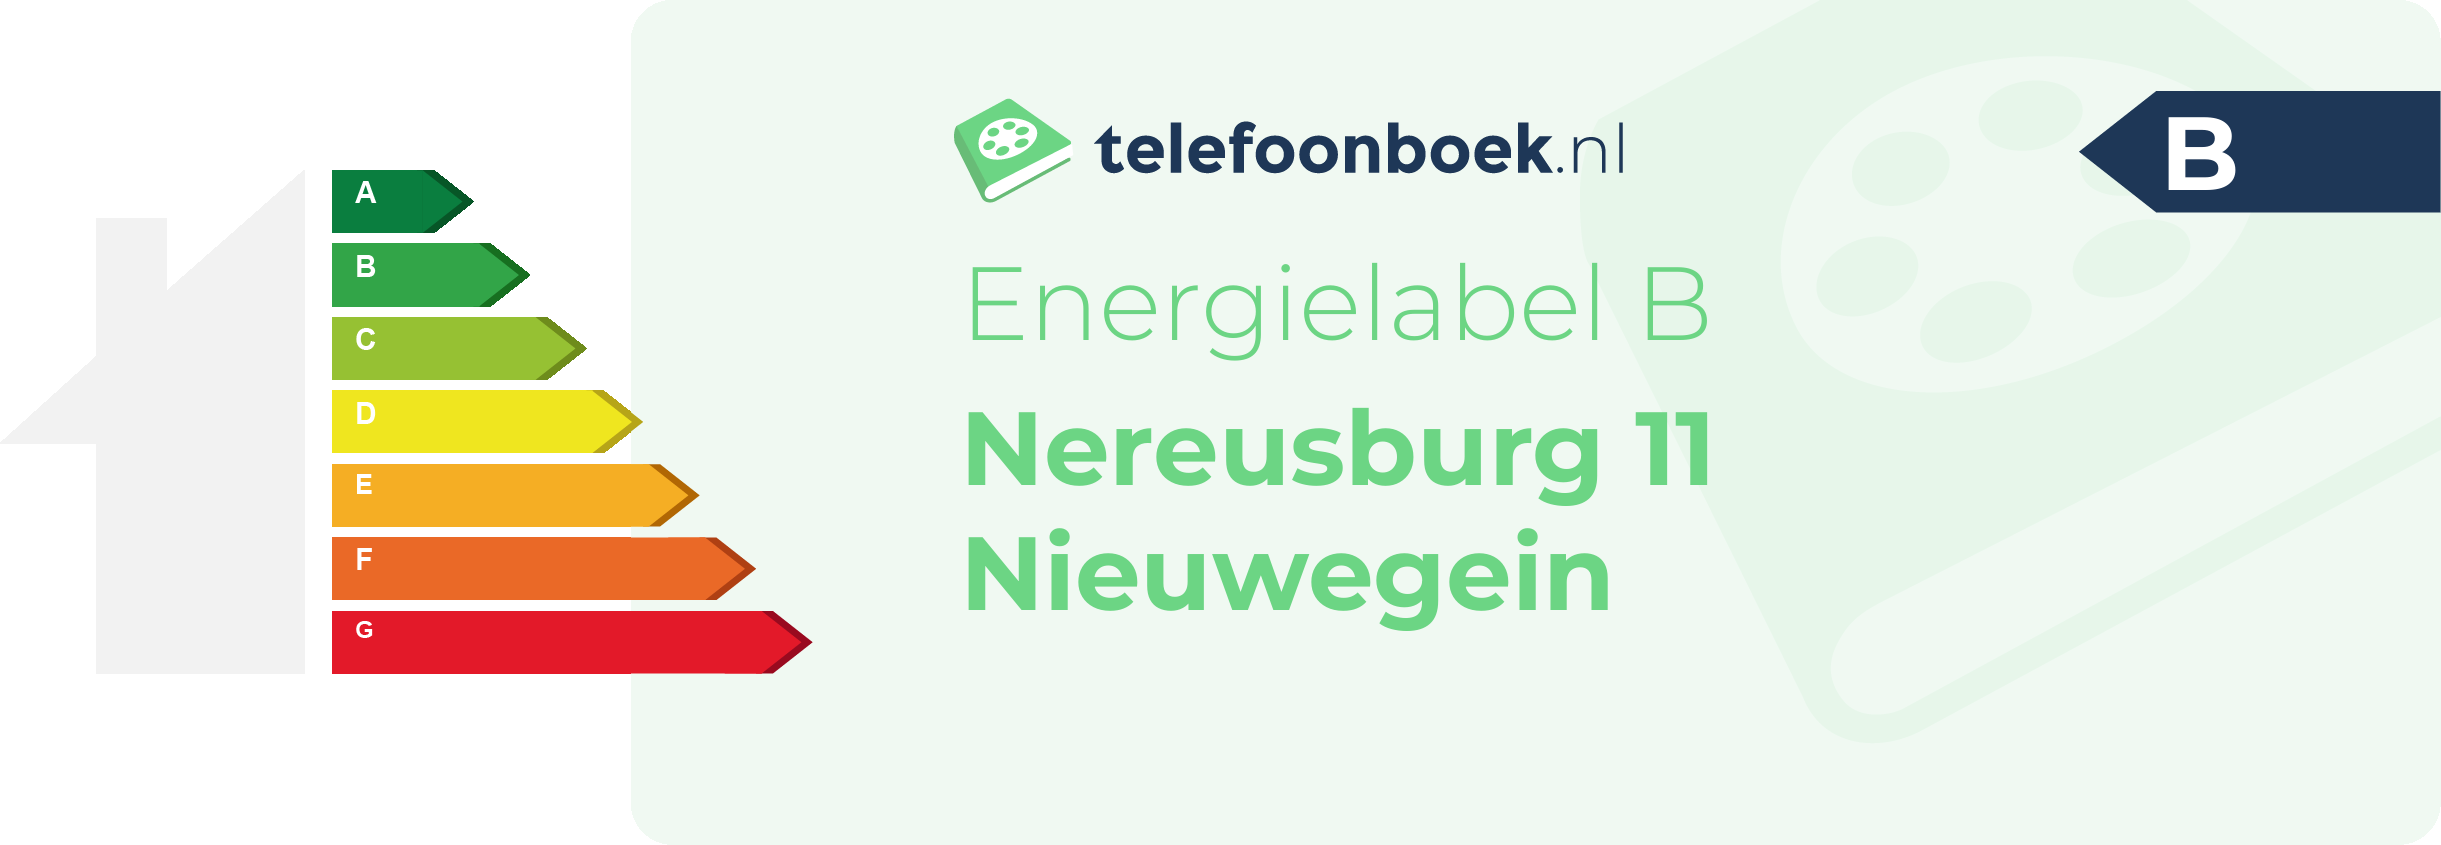 Energielabel Nereusburg 11 Nieuwegein